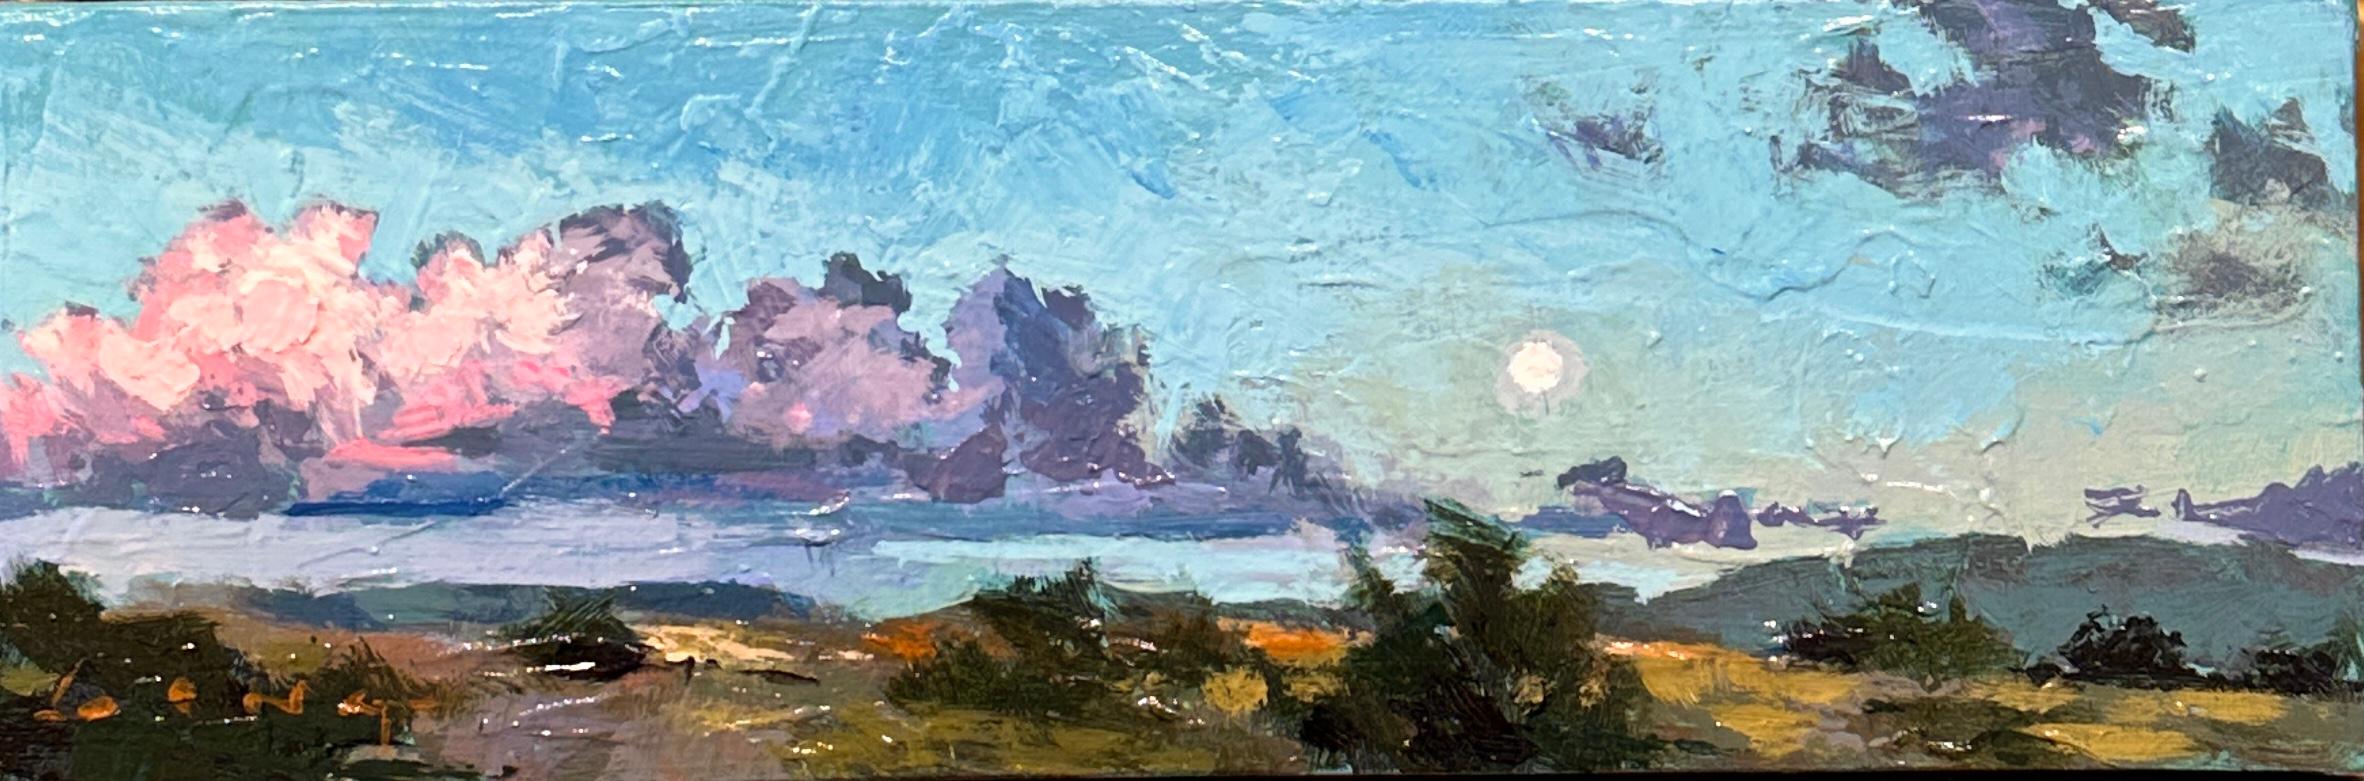 Landscape Painting Chris Long - Paysage lunaire de Sedona, paysage